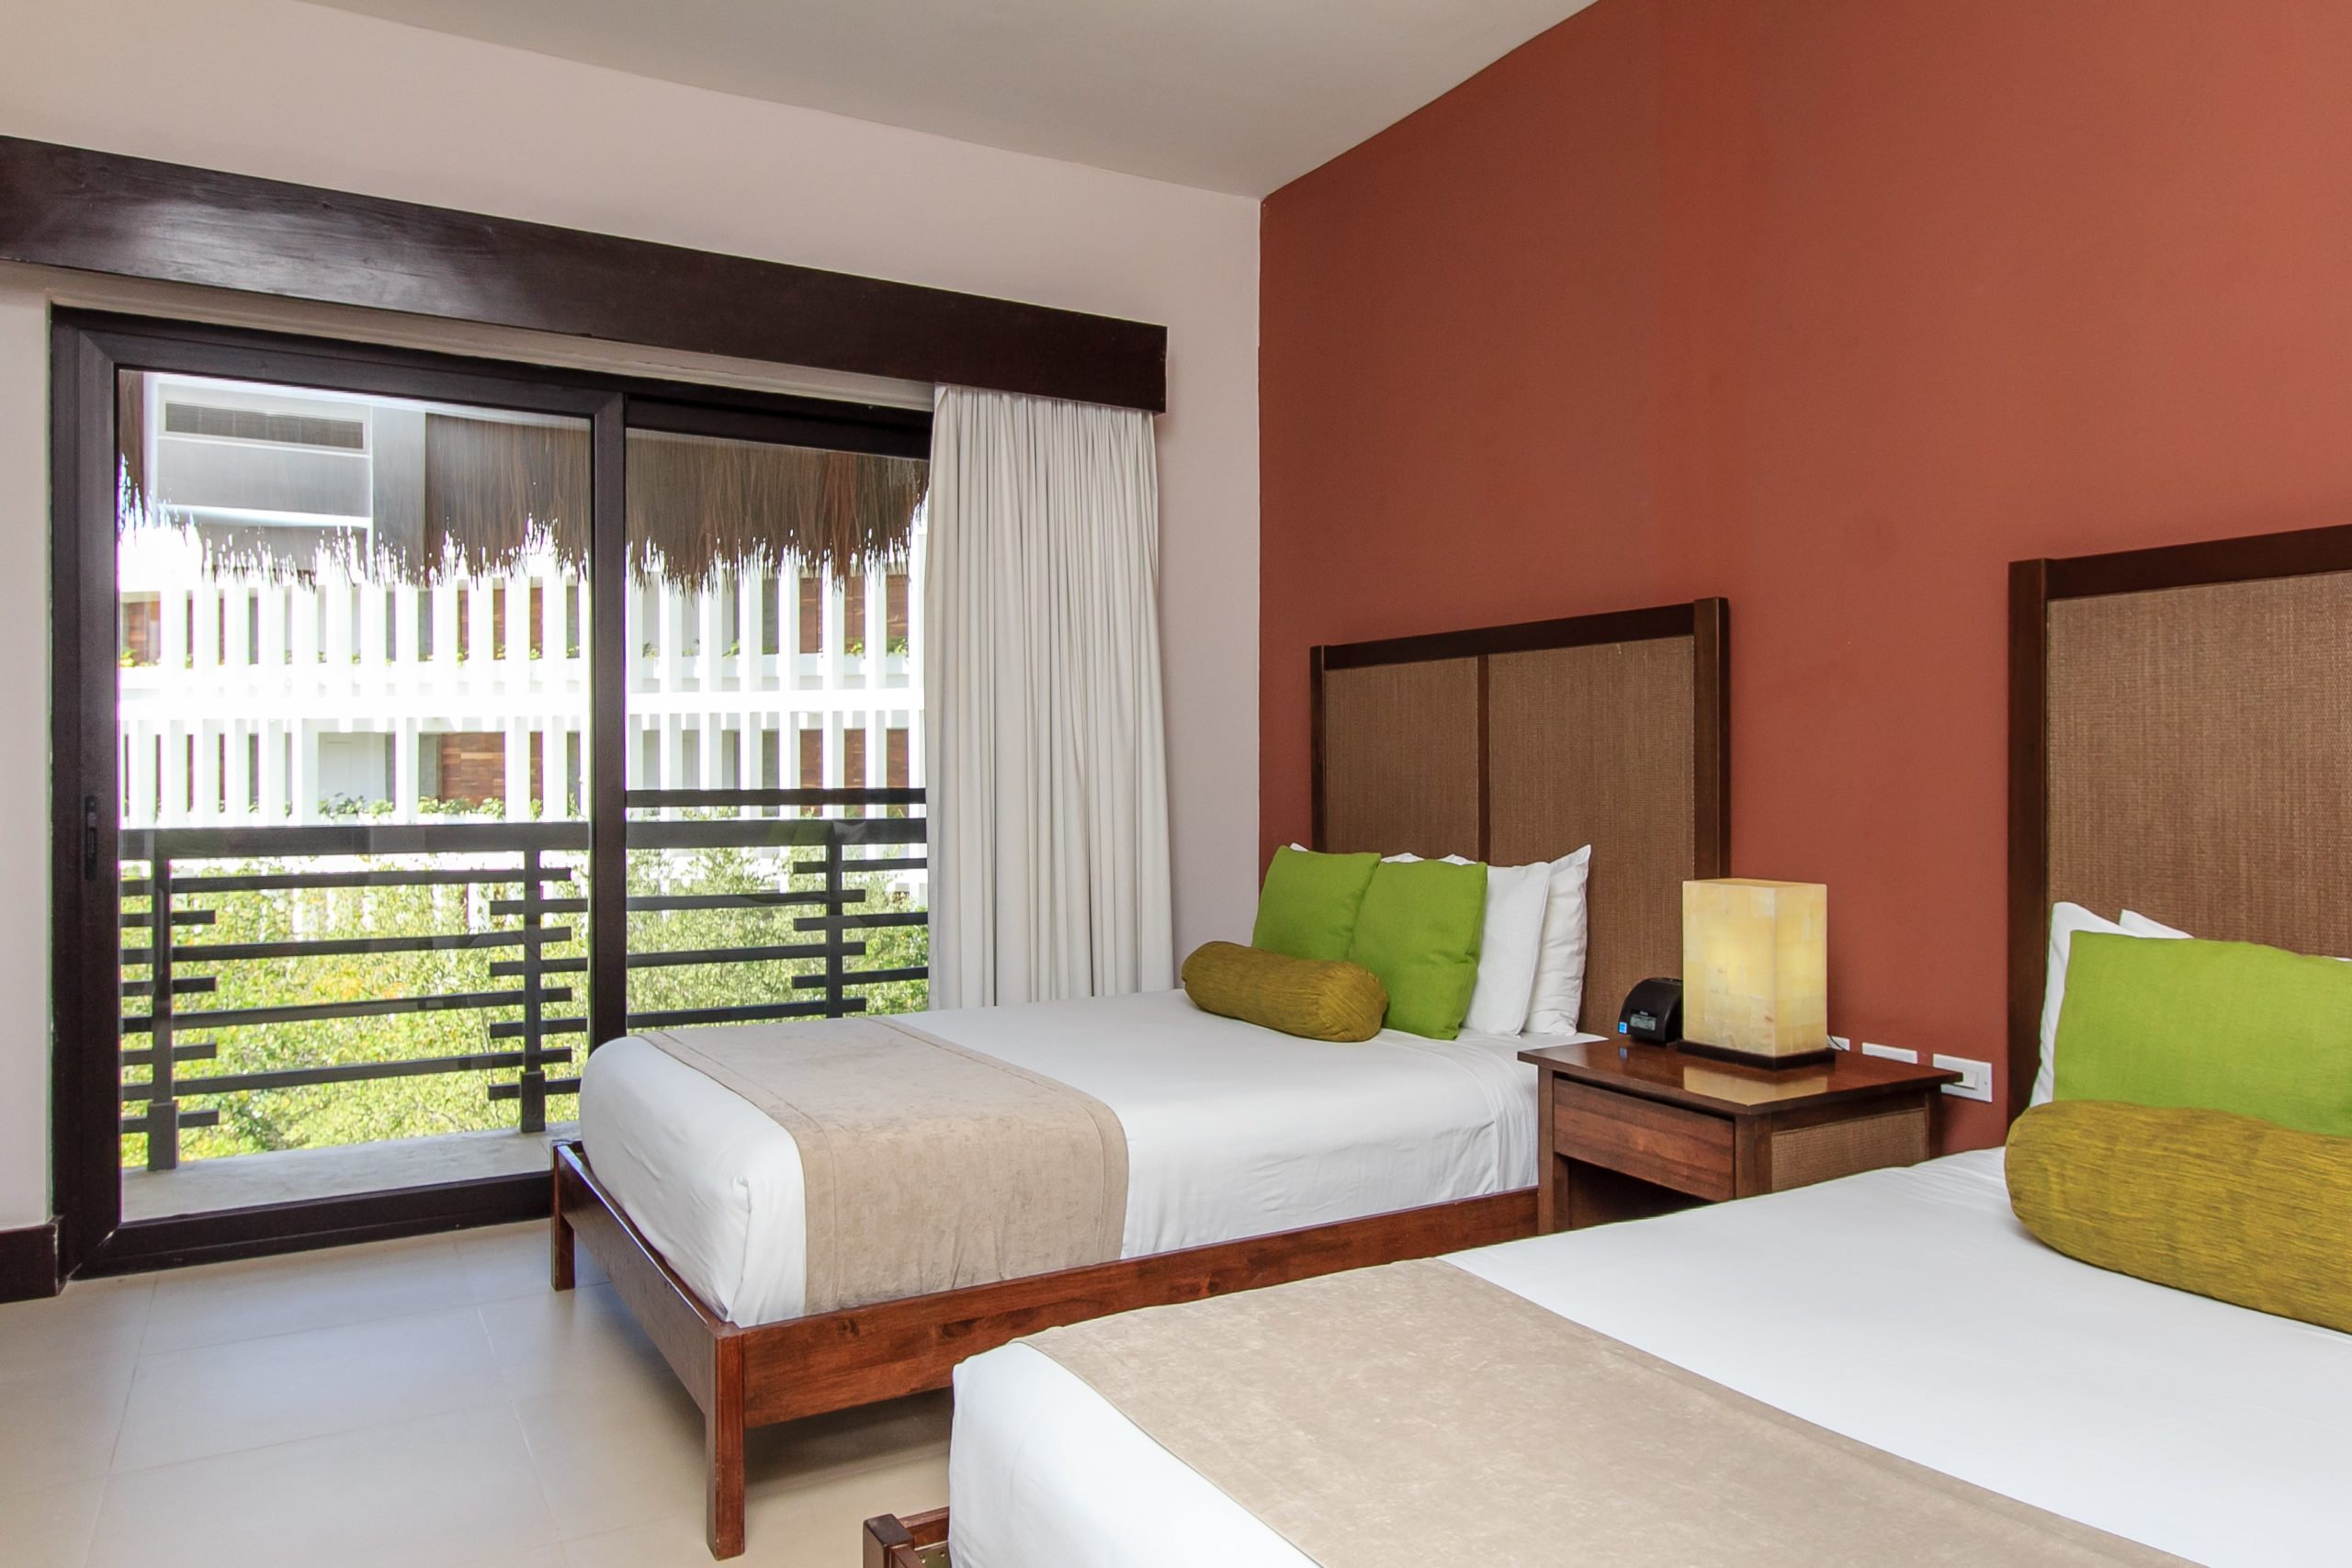 playa del carmen condos for sale aldea thai guests bedroom